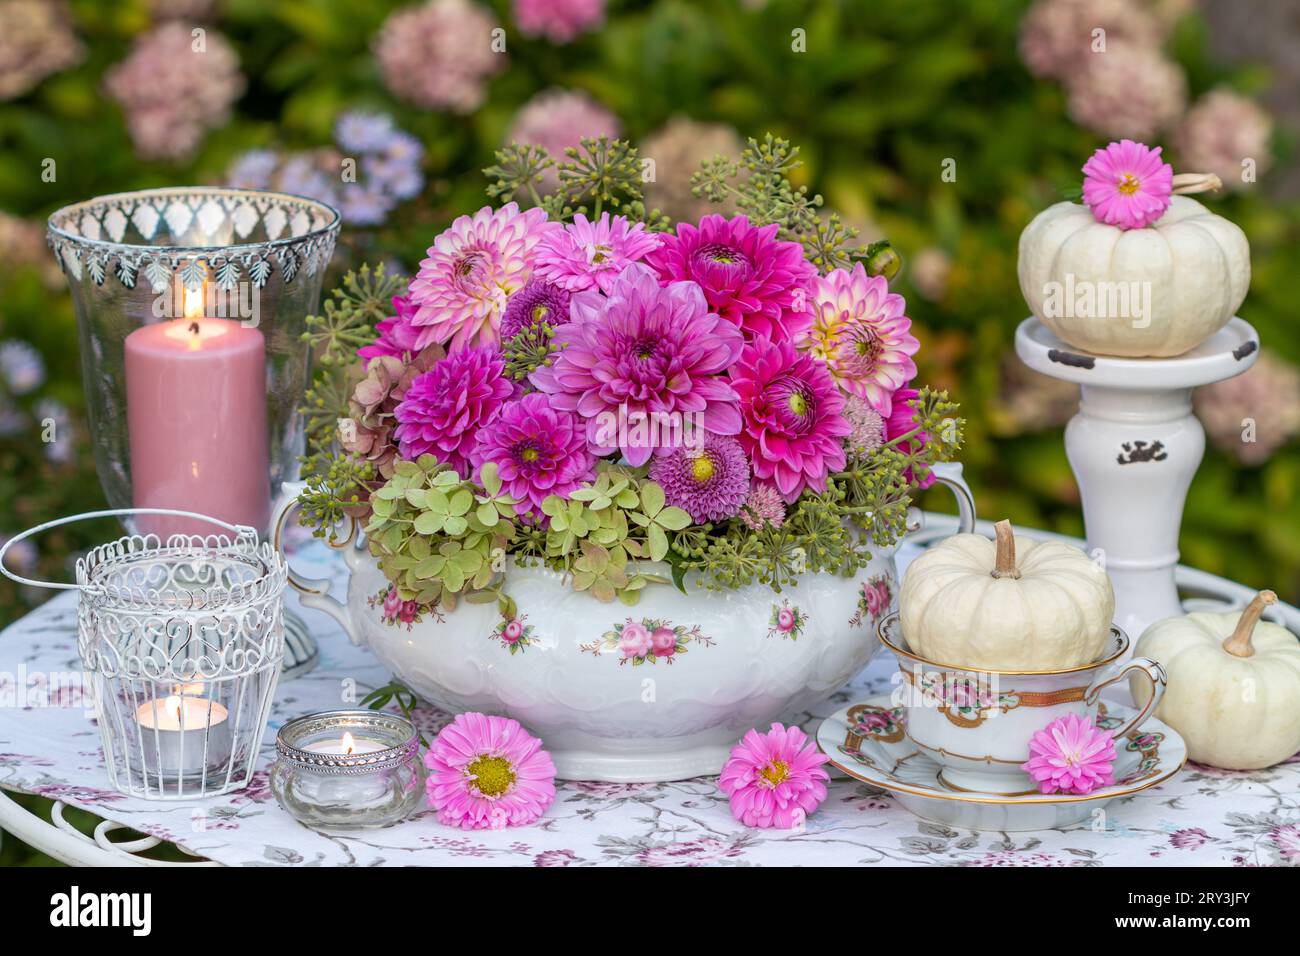 arrangement floral romantique de dahlias roses dans une soupe vintage, citrouilles blanches et lanternes de table Banque D'Images